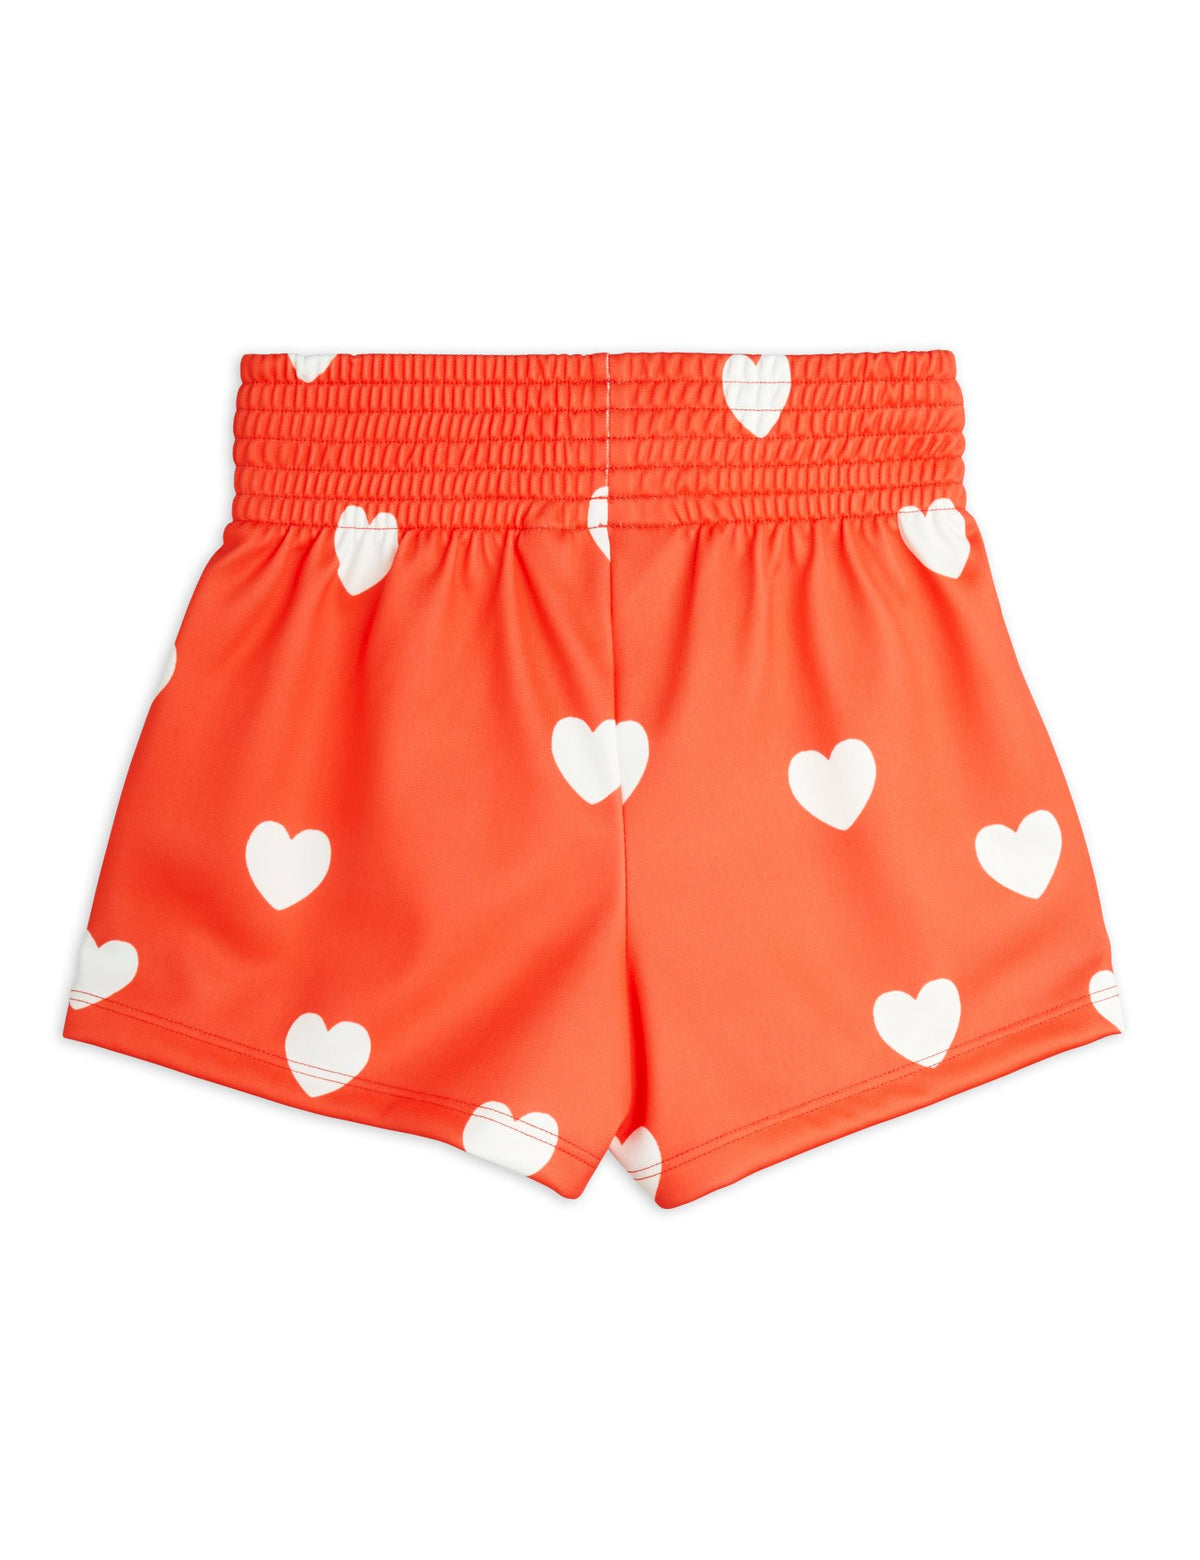 mini rodini hearts wtc shorts - red